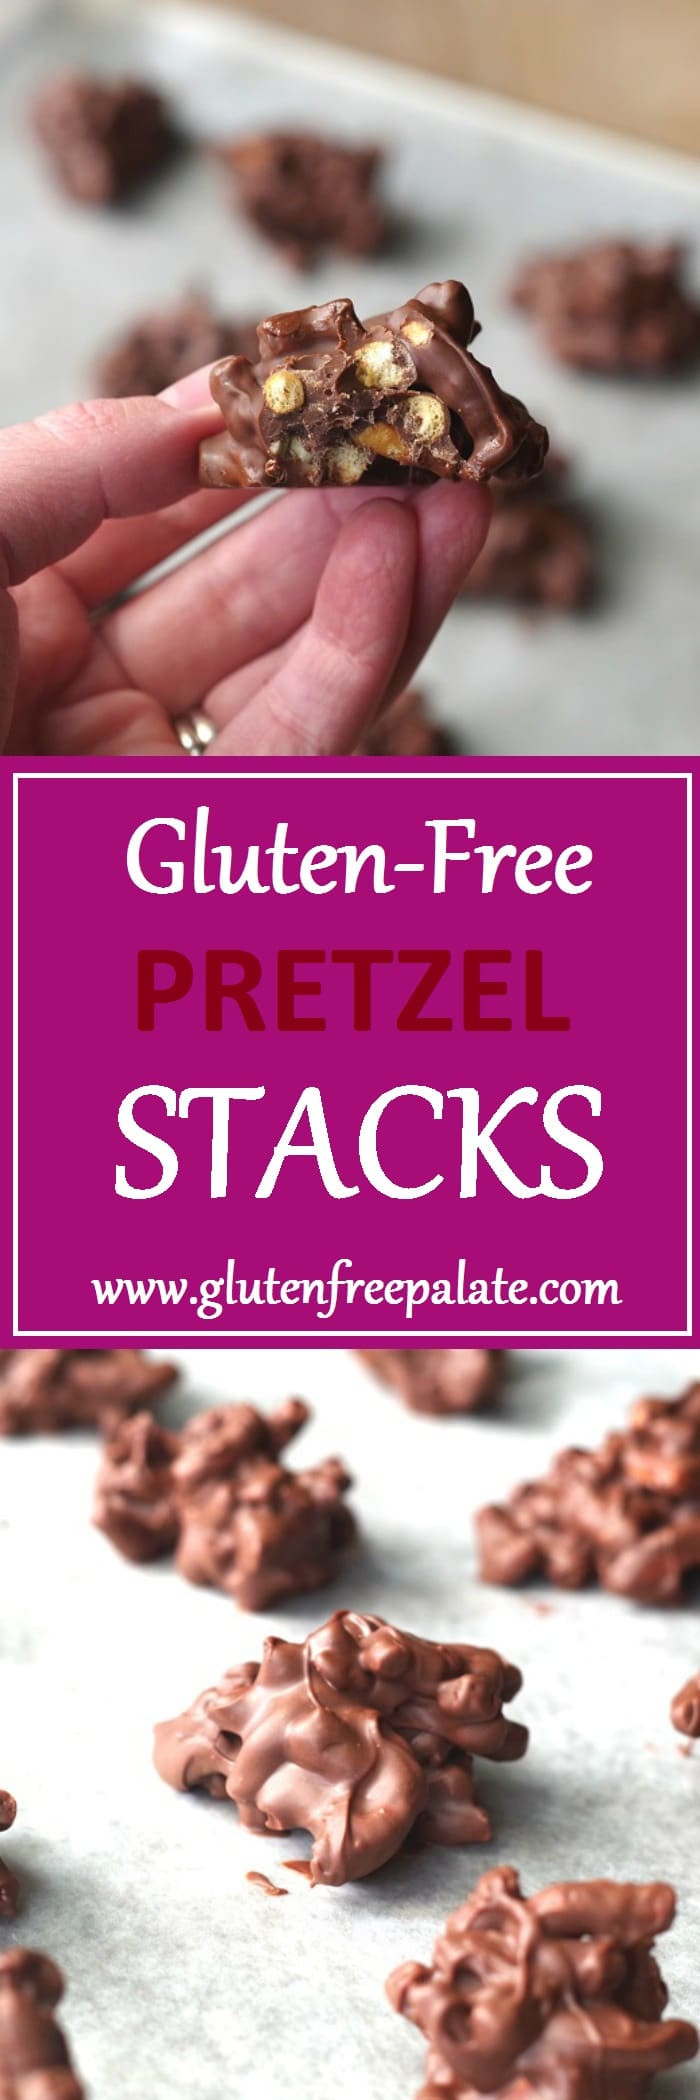 Snyder'S Gluten Free Pretzels Ingredients
 Gluten Free Pretzel Stacks